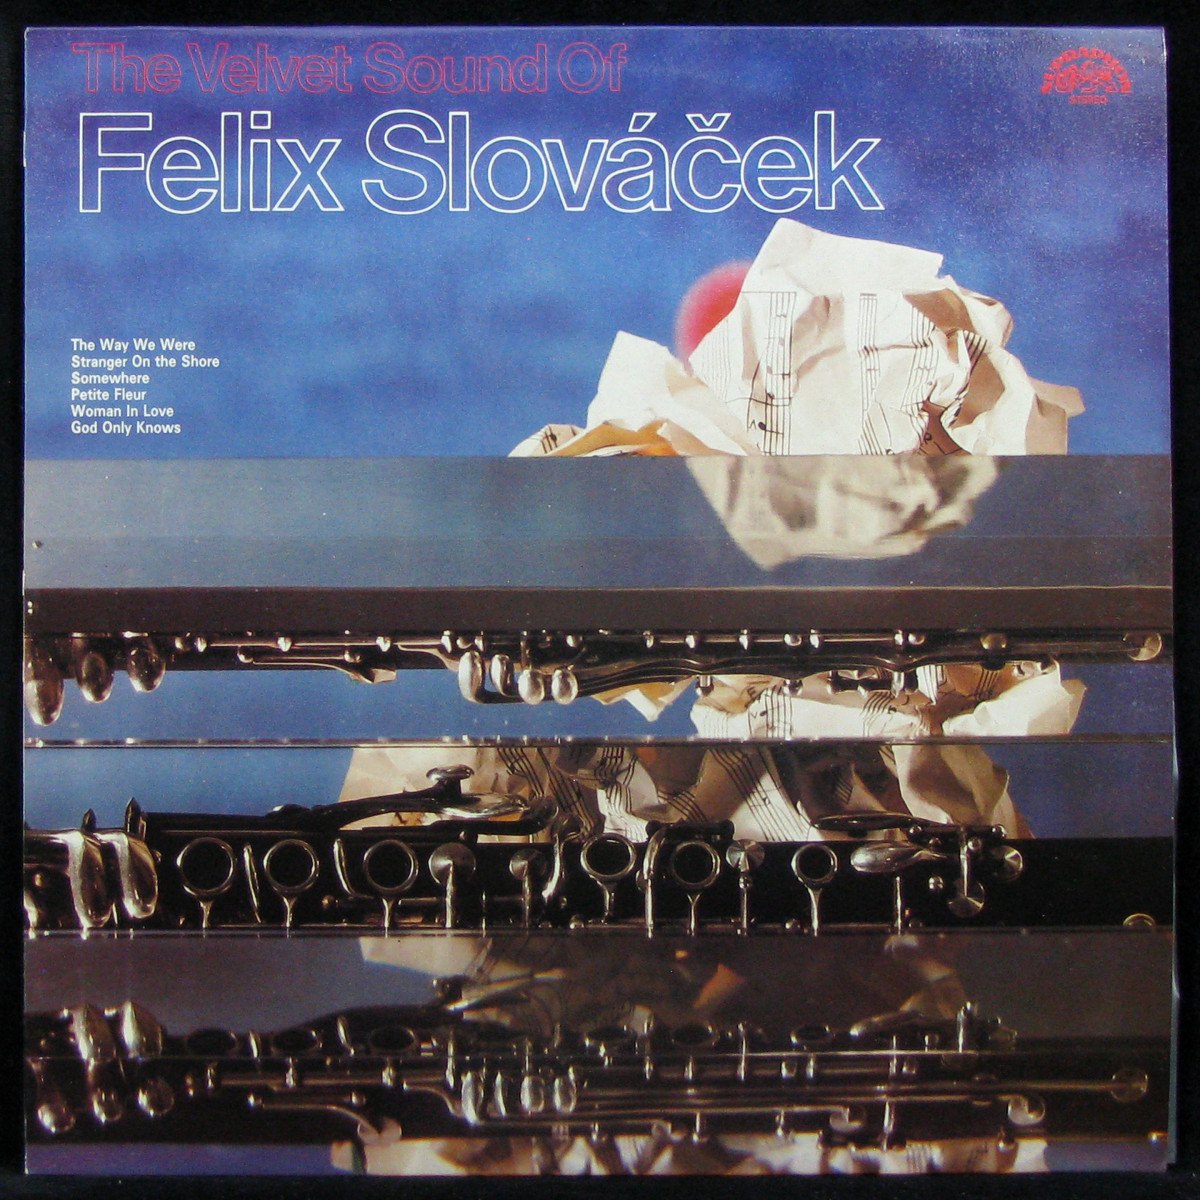 Velvet Sound Of Felix Slovacek